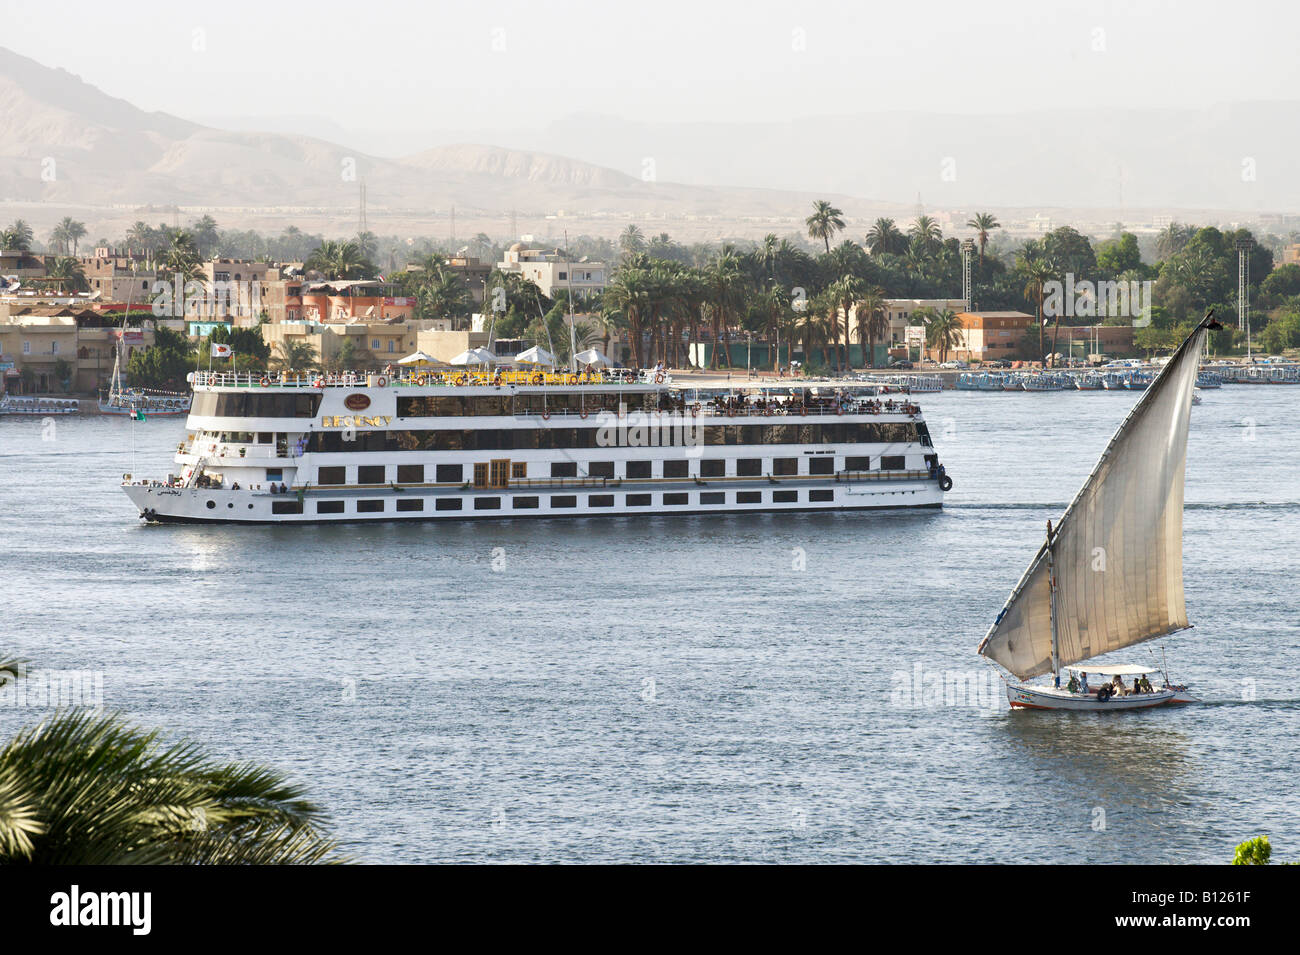 Bateau de croisière et felouque sur le Nil à la recherche vers la Cisjordanie, Louxor, vallée du Nil, l'Egypte Banque D'Images